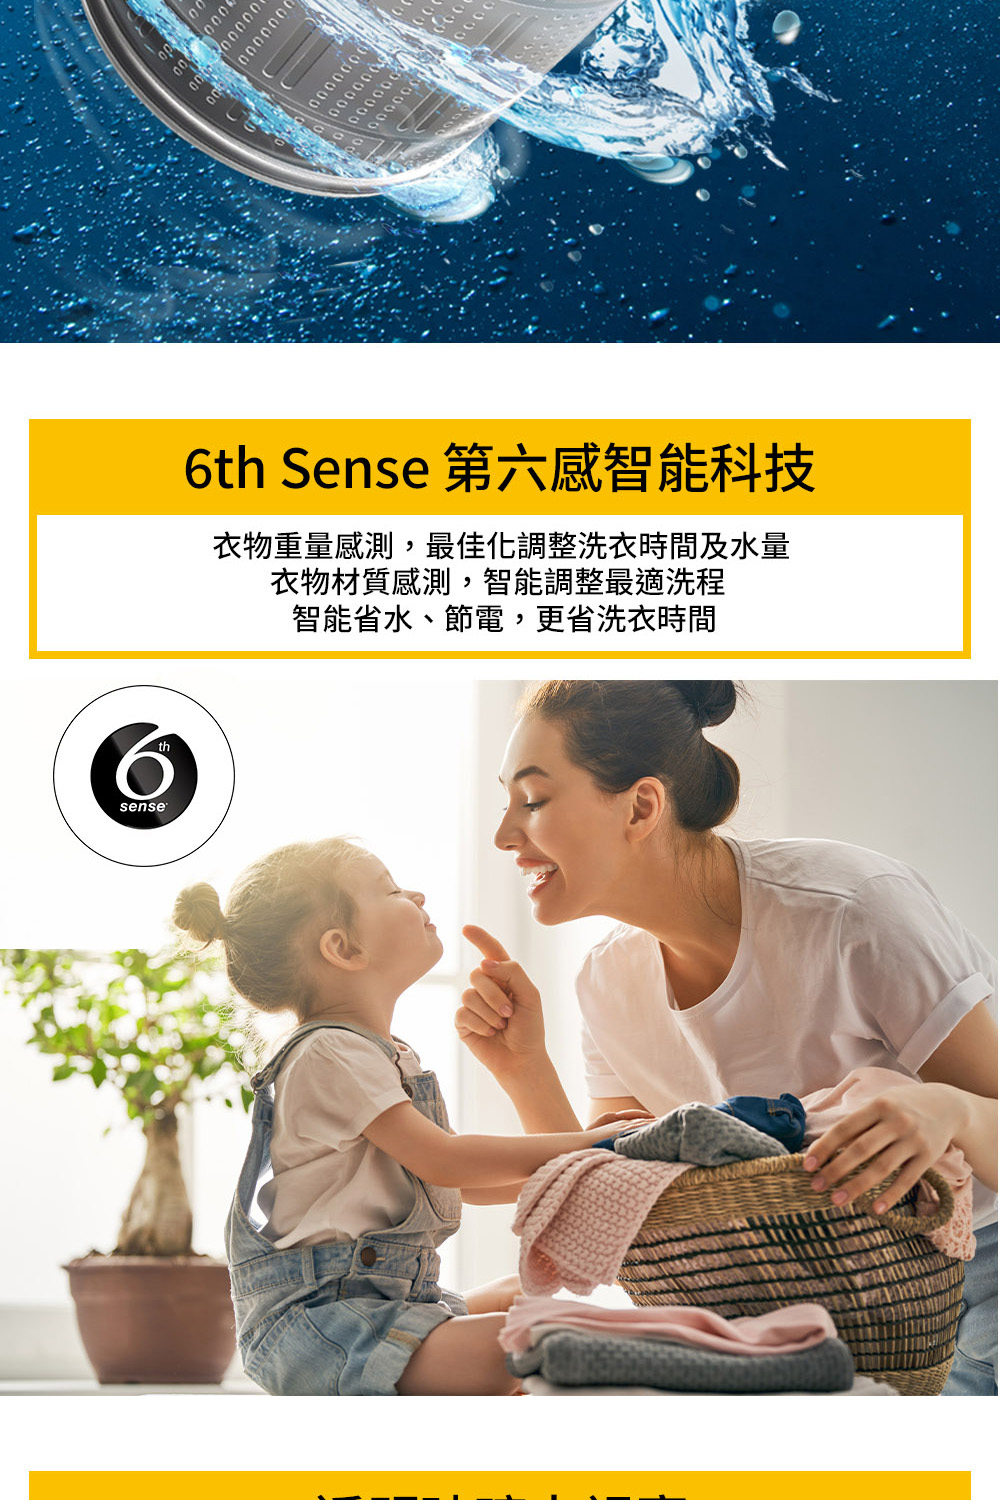 6th Sense 第六感智能科技 衣物重量感測,最佳化調整洗衣時間及水量 衣物材質感測,智能調整最適洗程 智能省水、節電,更省洗衣時間 